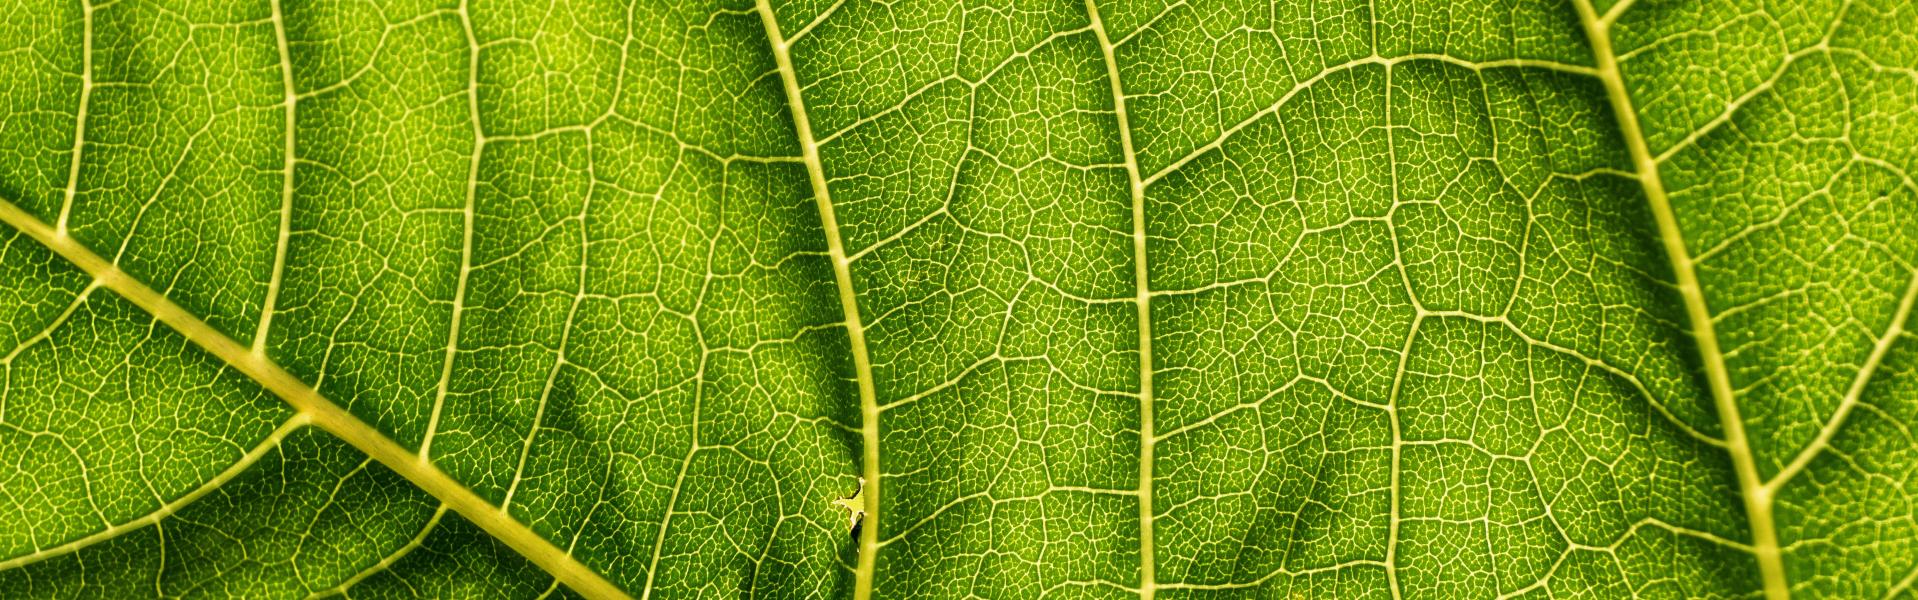 Green-leaf close-up